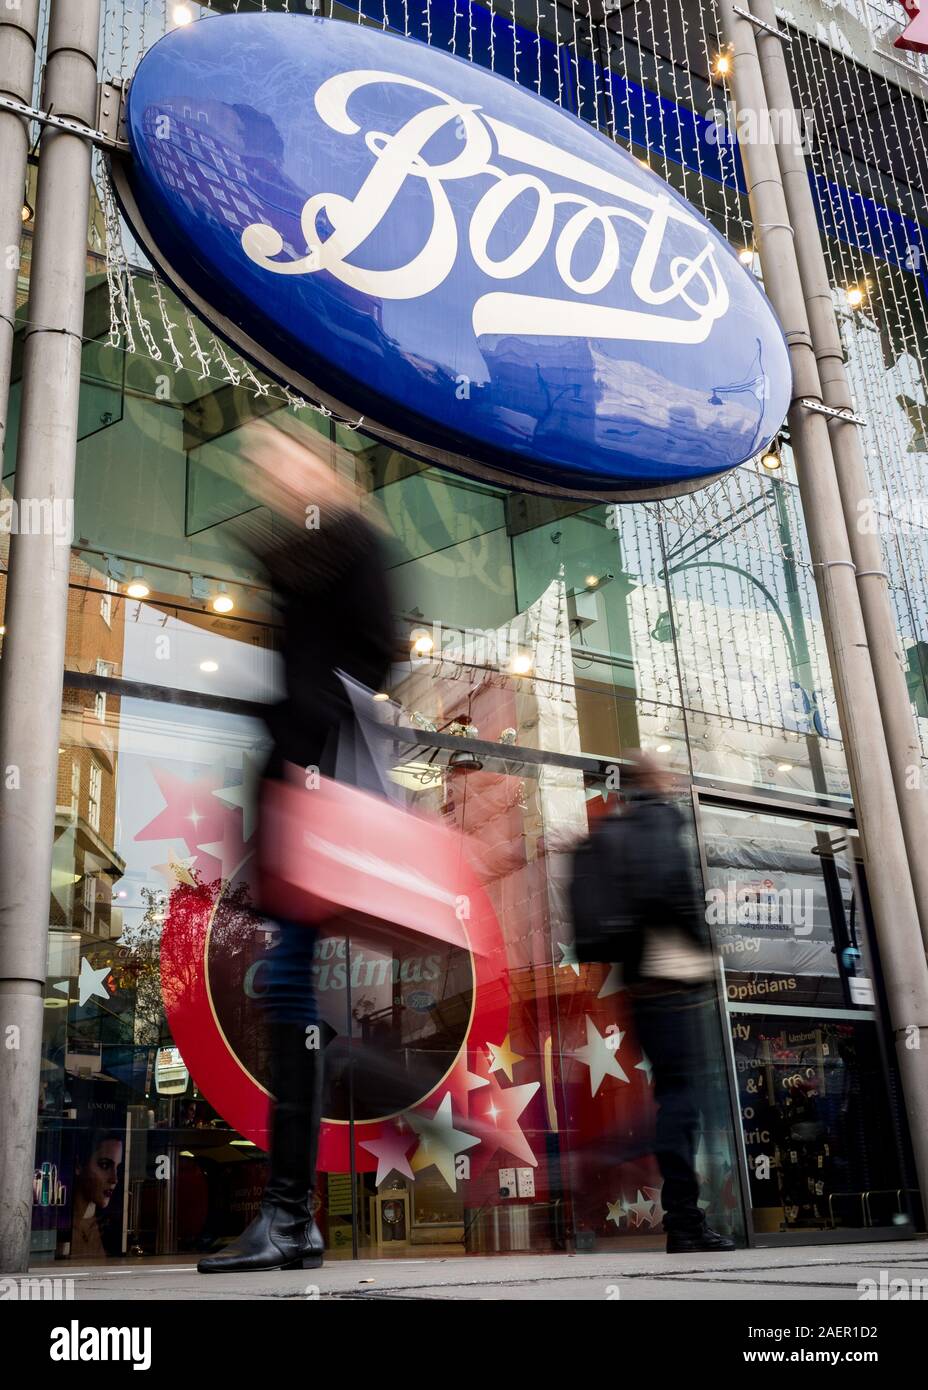 Londres, Royaume-Uni - 23 NOVEMBRE 2011 : Boots the Chemist. Shoppers floue en passant devant la vitrine à l'bottes store sur Oxford Street de Londres. Banque D'Images